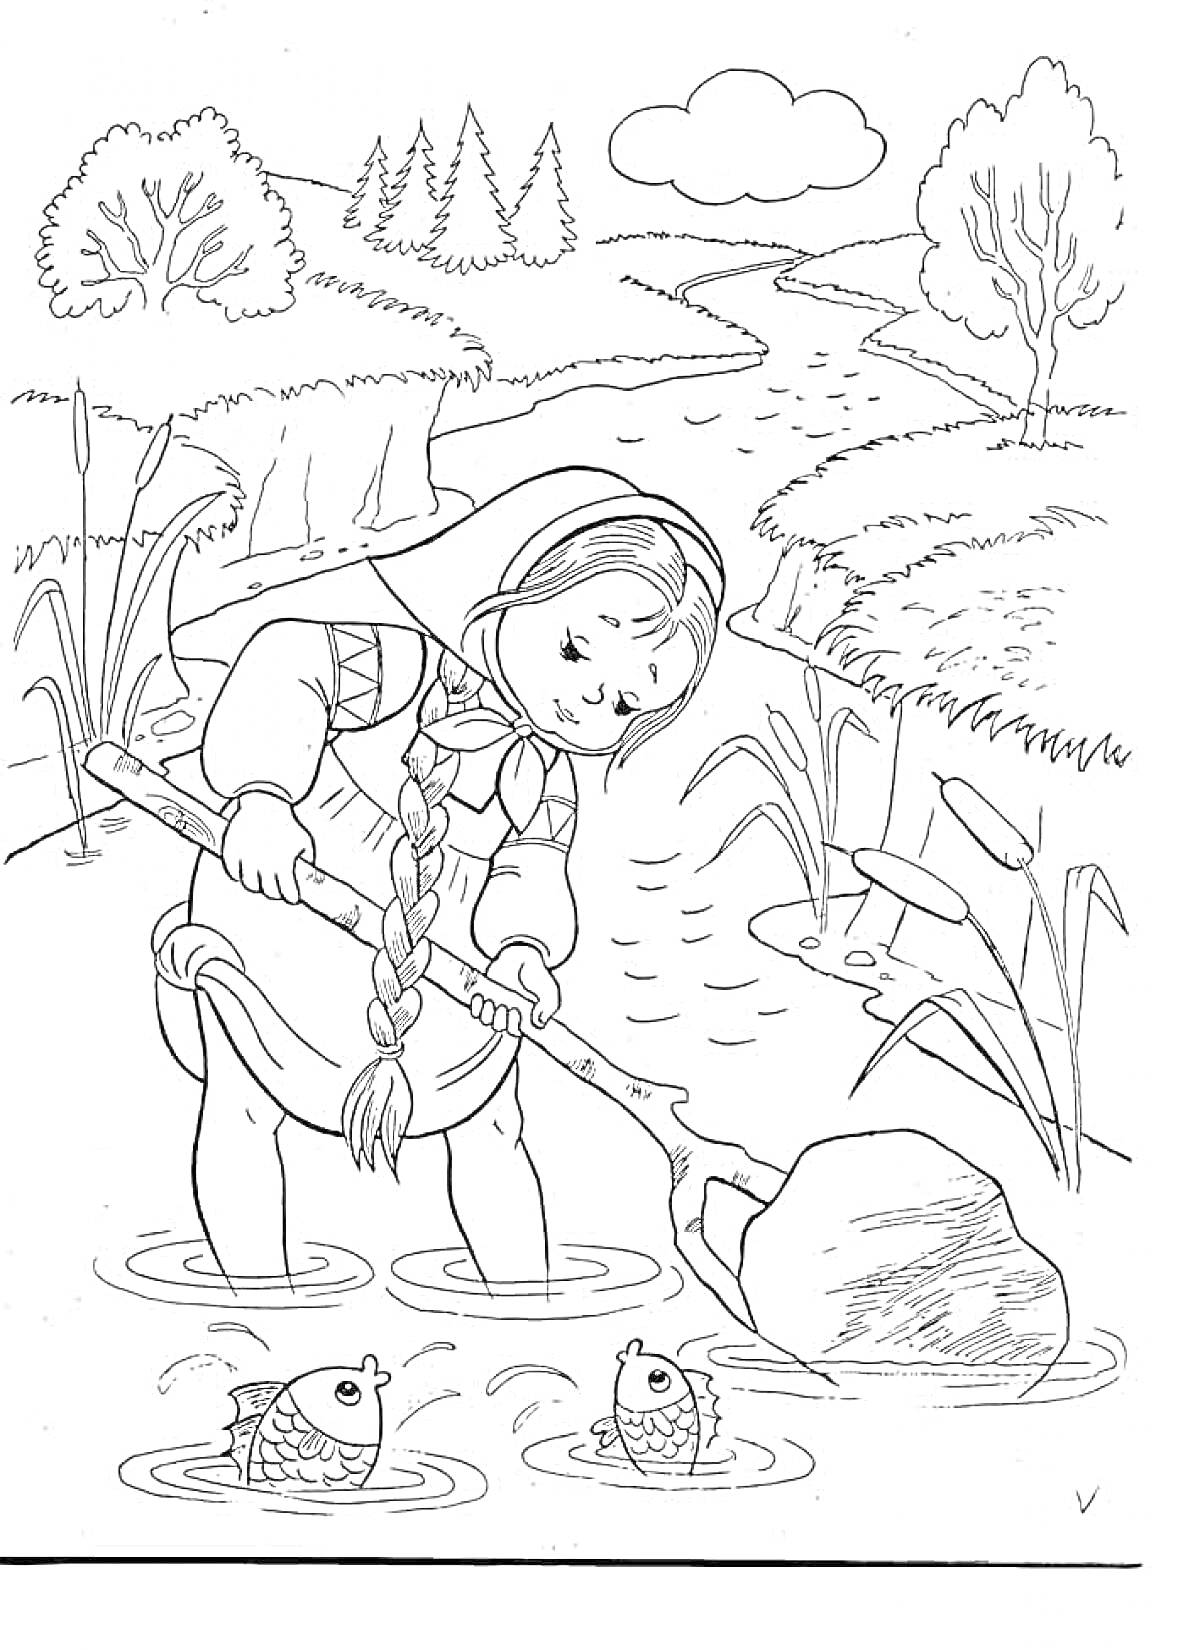 Раскраска Девочка с косой и лопатой в воде, две рыбы, речка, поля, деревья и облако на небе